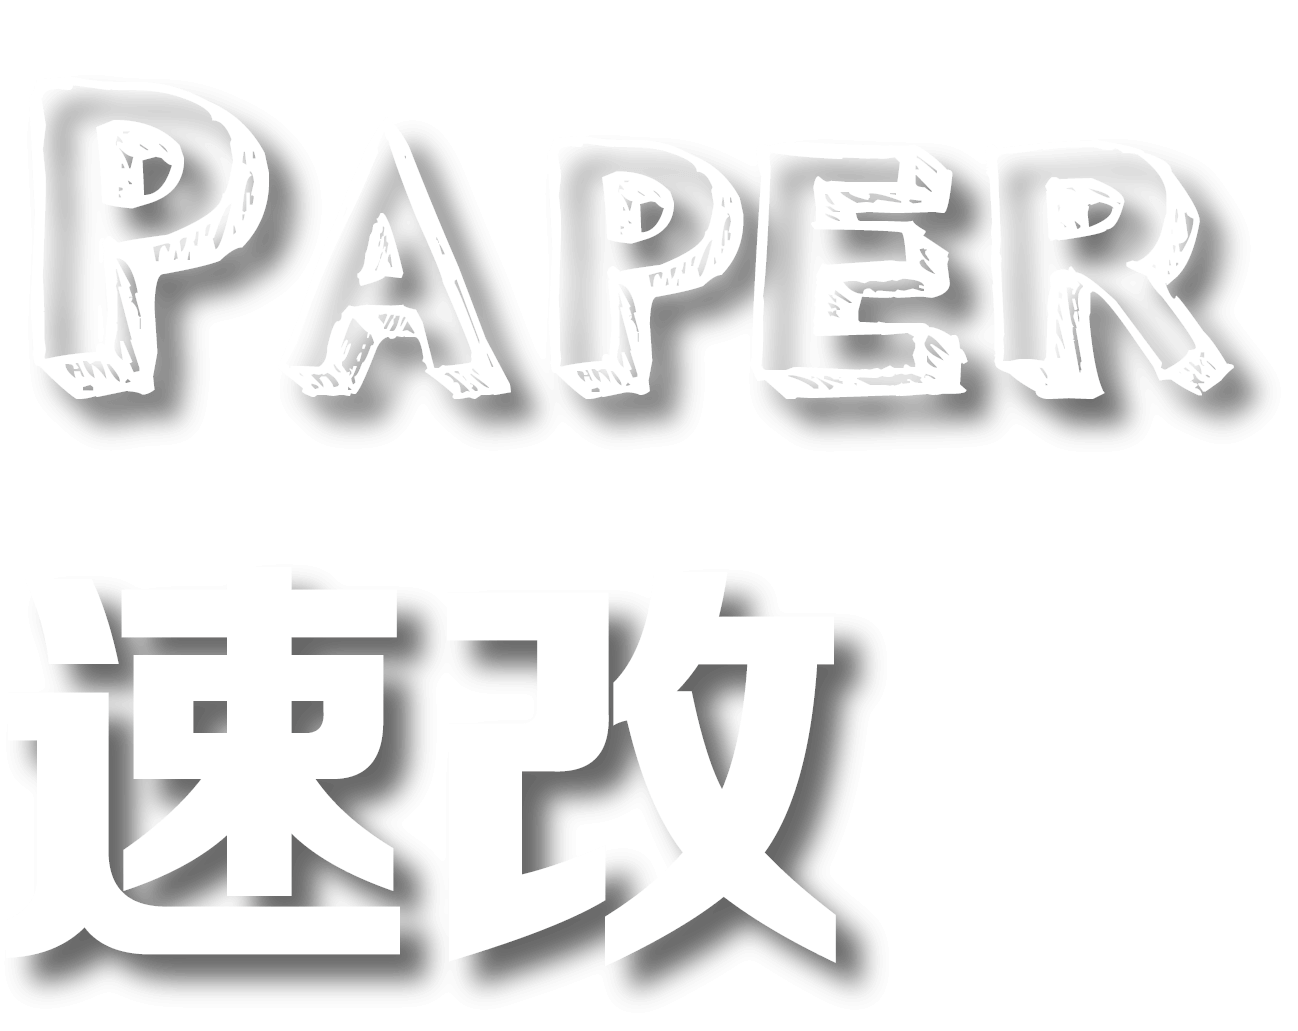 Paper速改